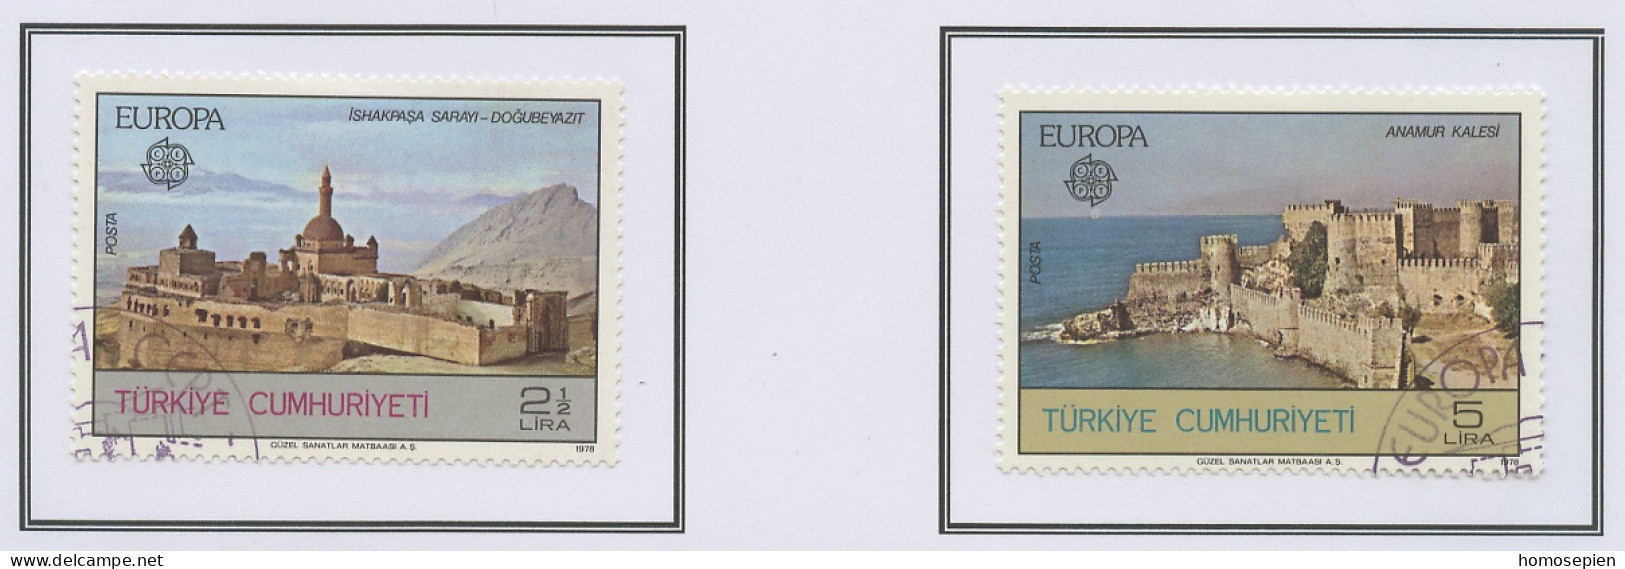 Europa CEPT 1978 Turquie - Türkei - Turkey Y&T N°2213 à 2214 - Michel N°2443 à 2444 (o) - 1978